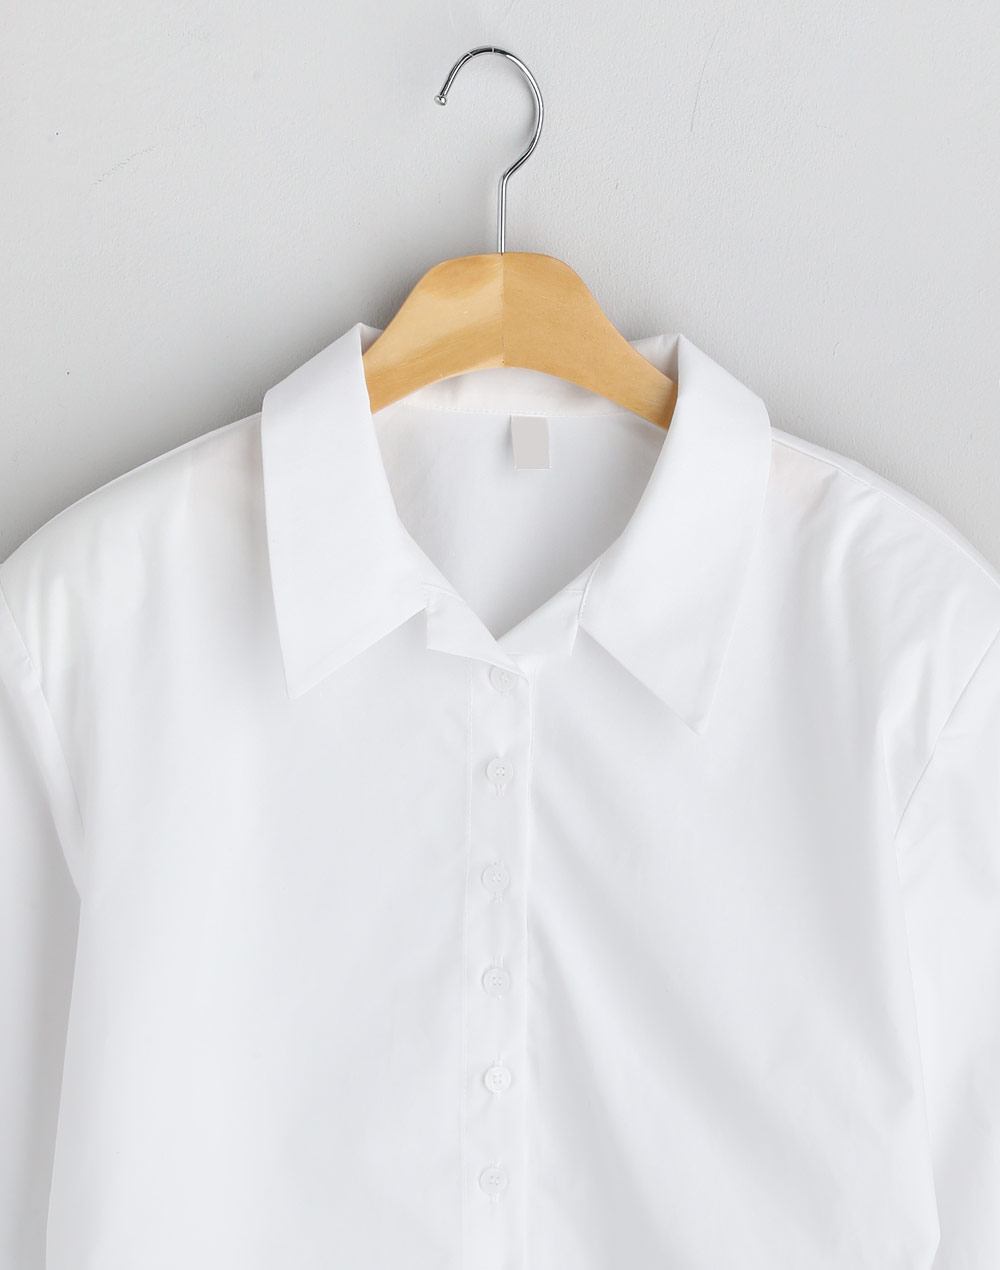 Cropped shirt・p279515（ブラウス/シャツ）| mi0306chi | 東京ガールズマーケット